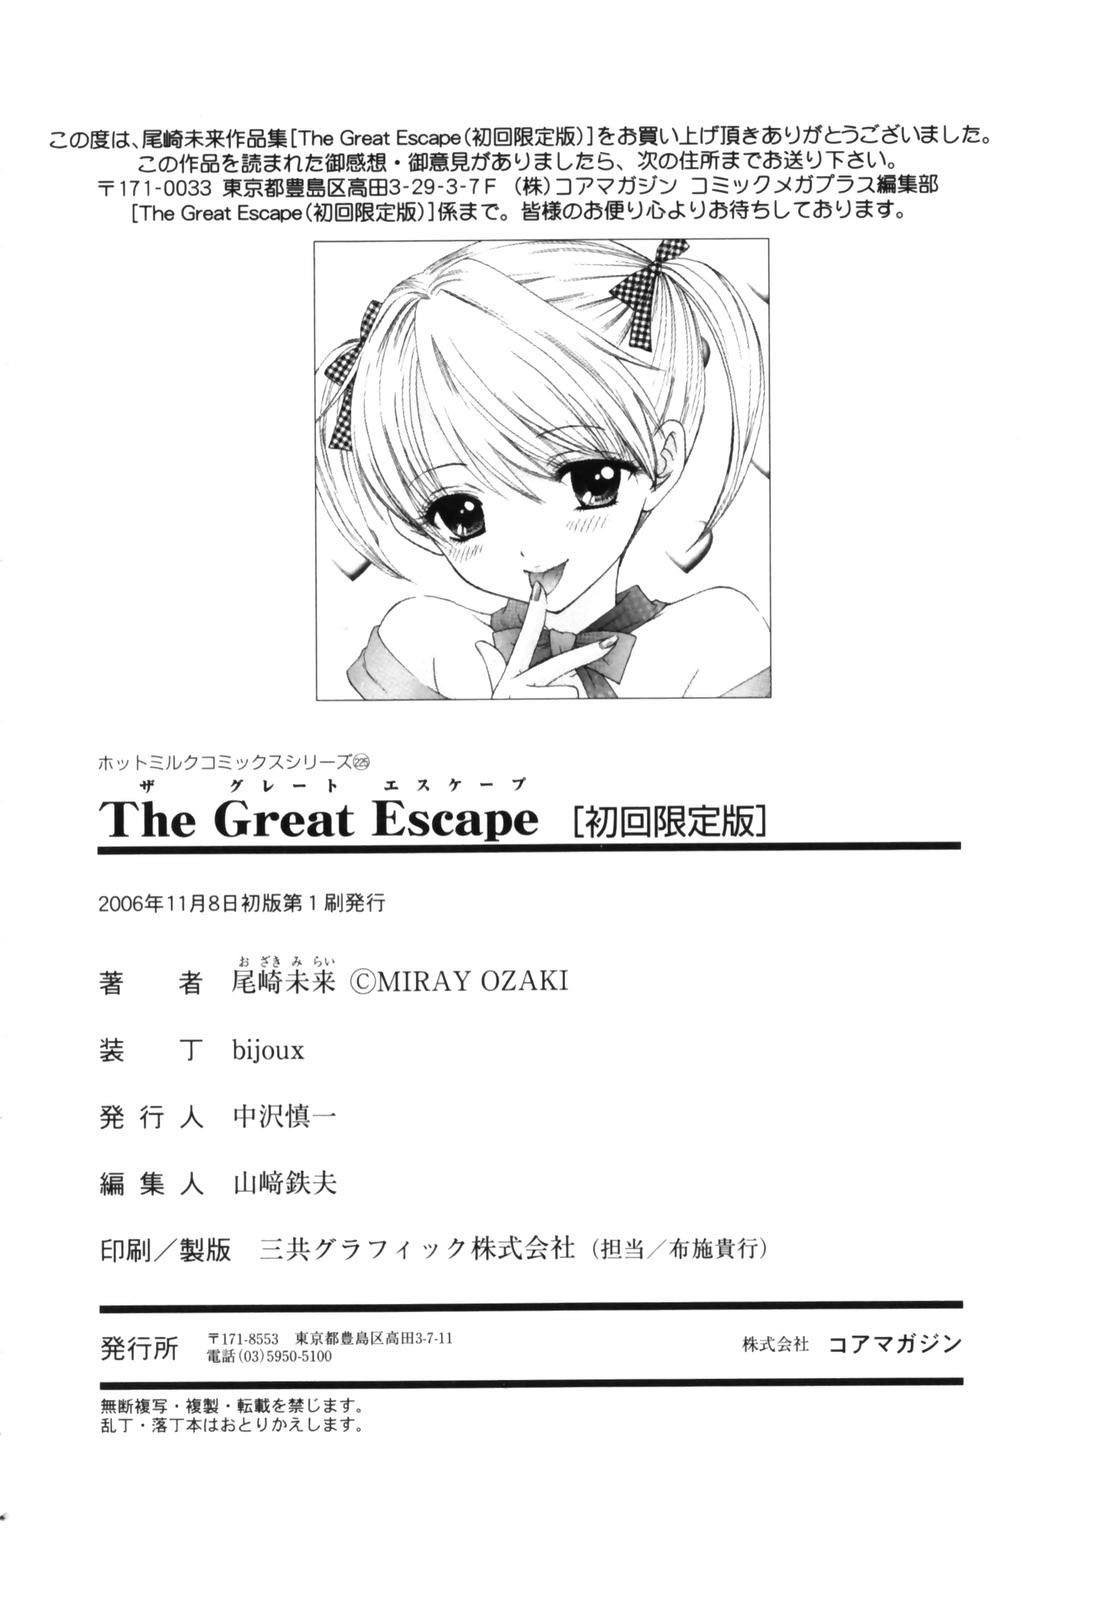 [OZAKI MIRAY] The Great Escape 